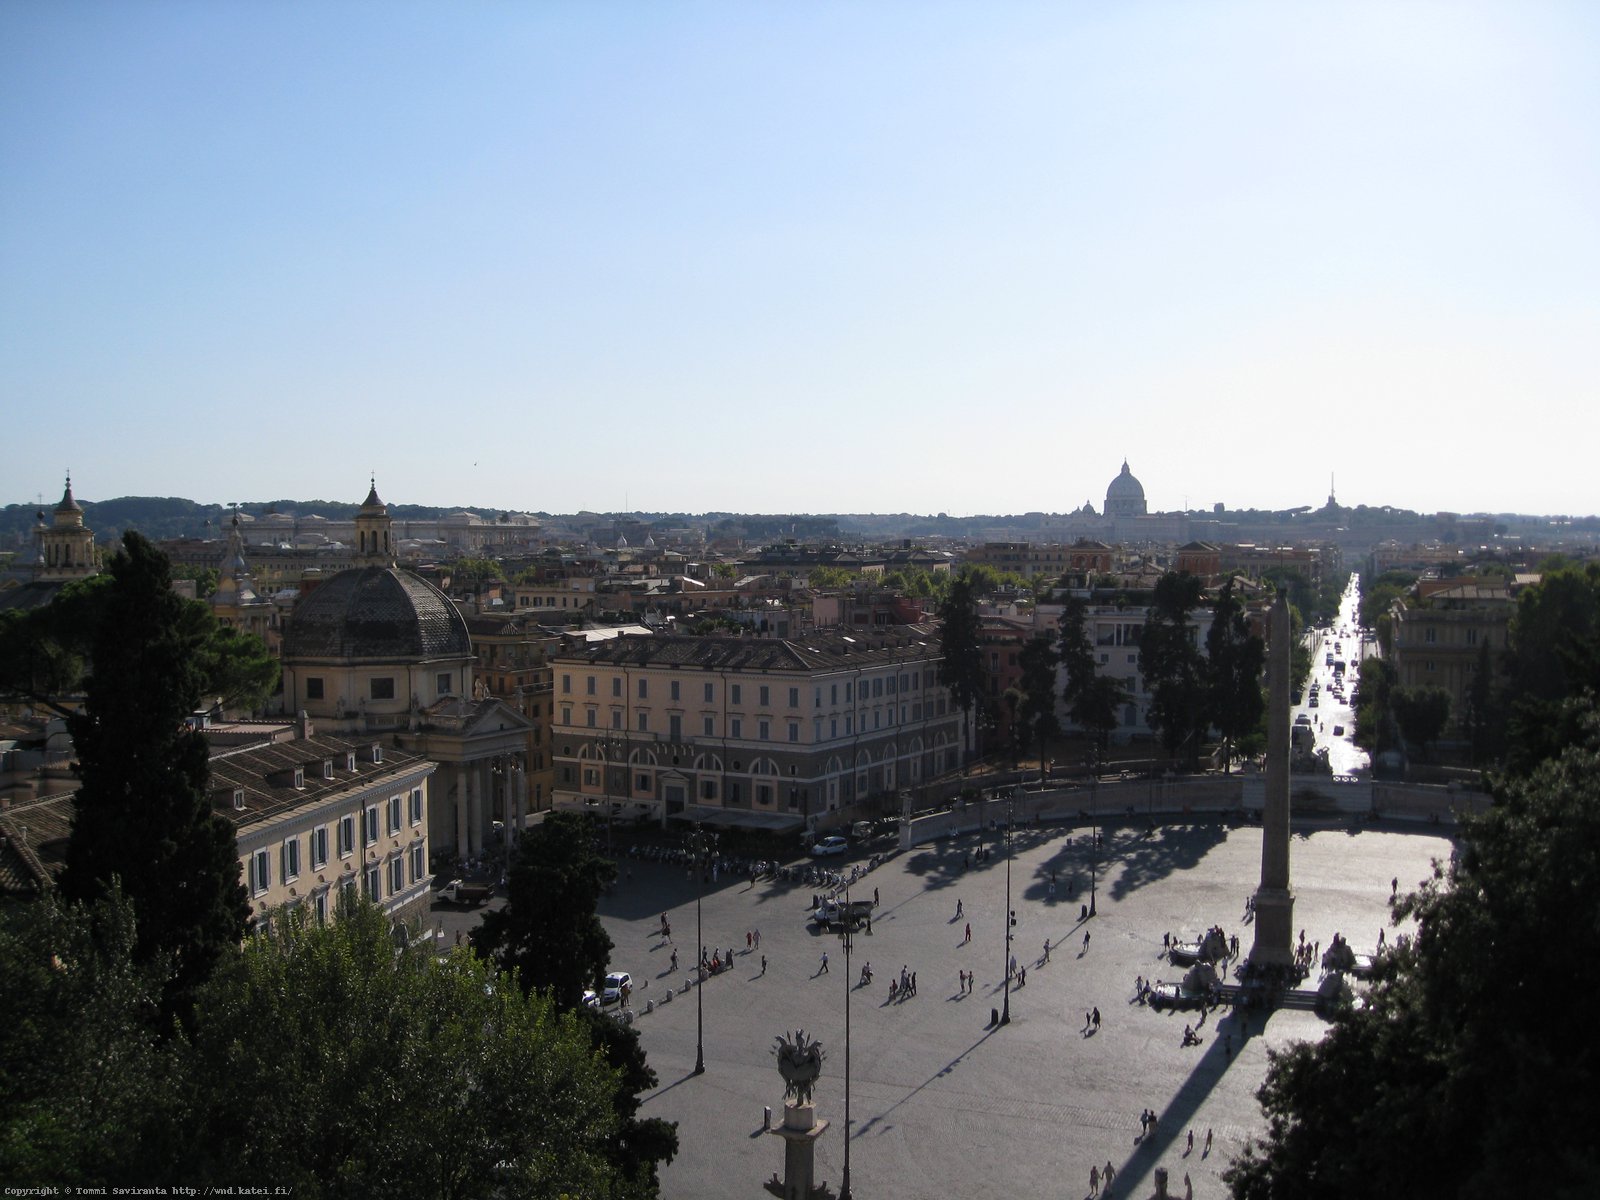 Day #3: A view over Piazza del Popolo